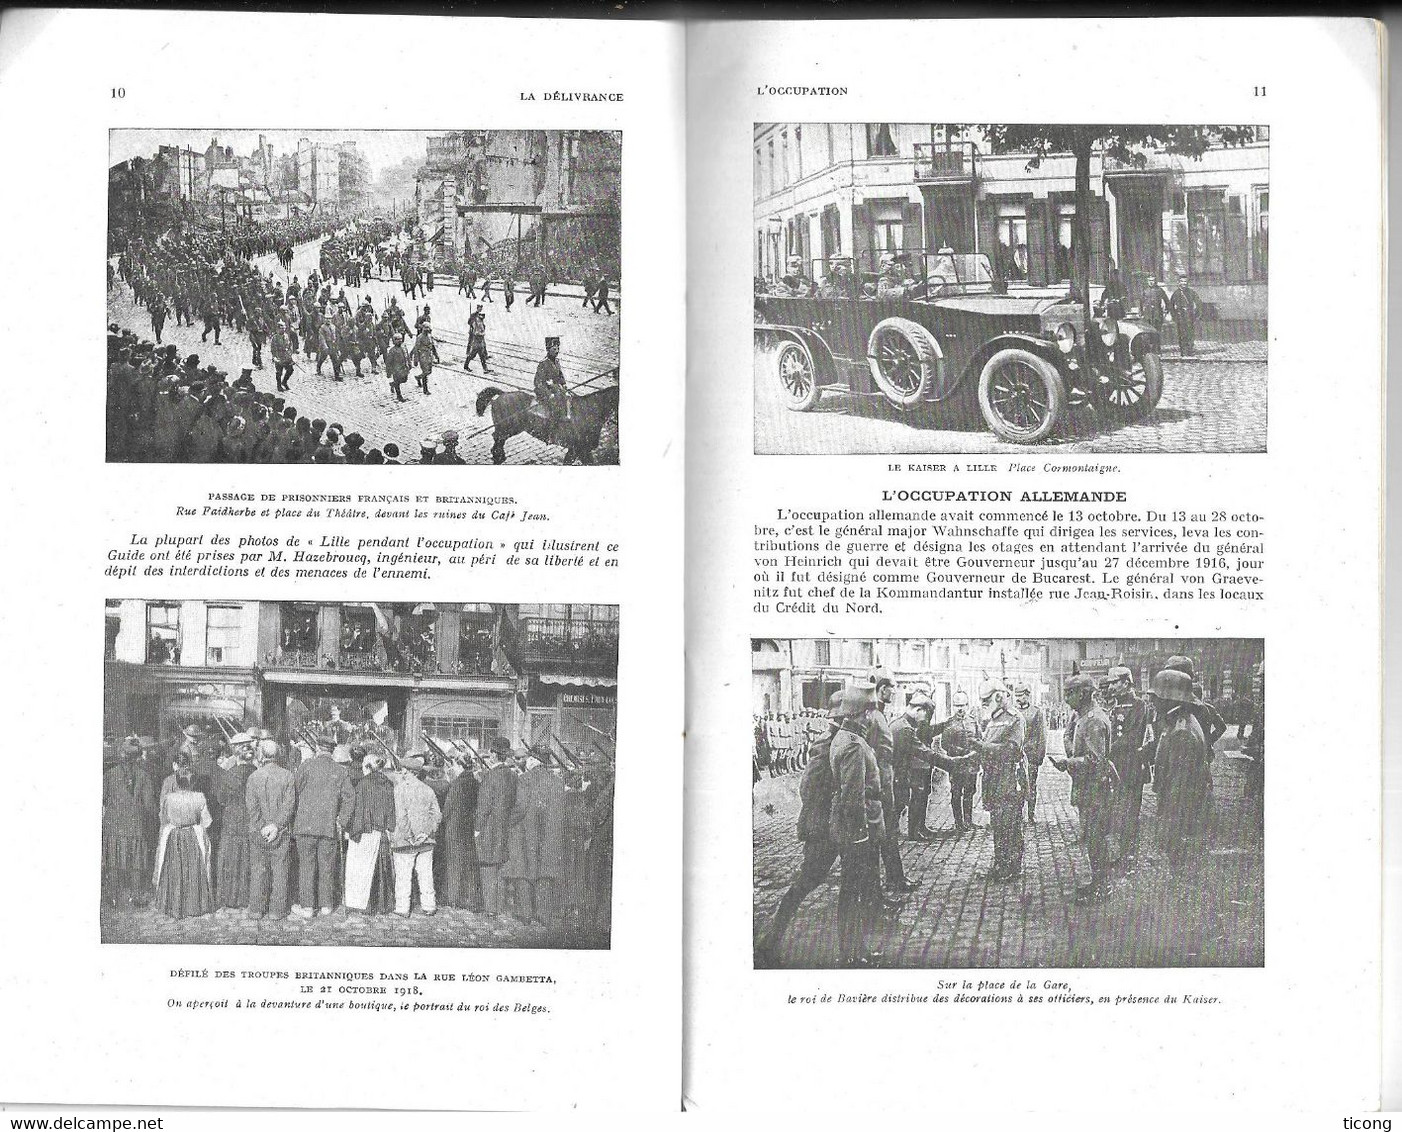 MICHELIN GUIDE ILLUSTRE MILITAIRE LES CHAMPS DE BATAILLES 1914 1918 - LILLE AVANT ET PENDANT LA GUERRE - EDITE EN 1920 - Michelin (guides)